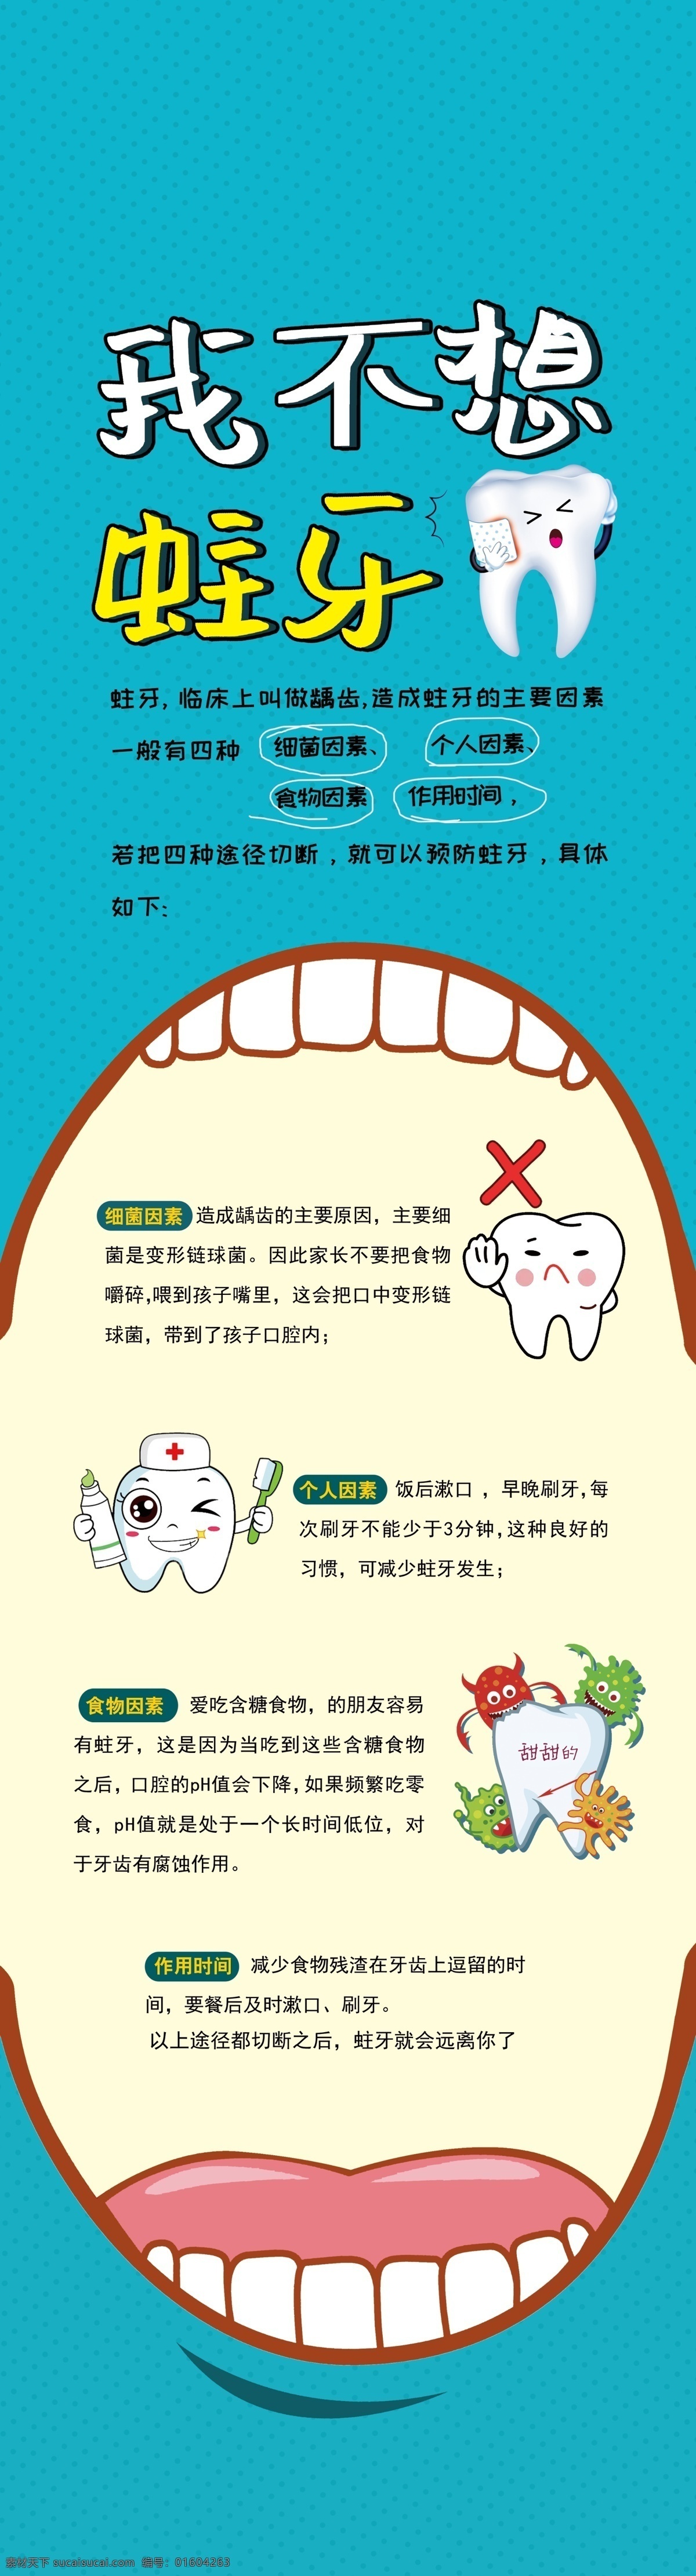 口腔科 蛀牙 海报 口腔 齿科 牙 广告 周年庆吊旗 招贴设计